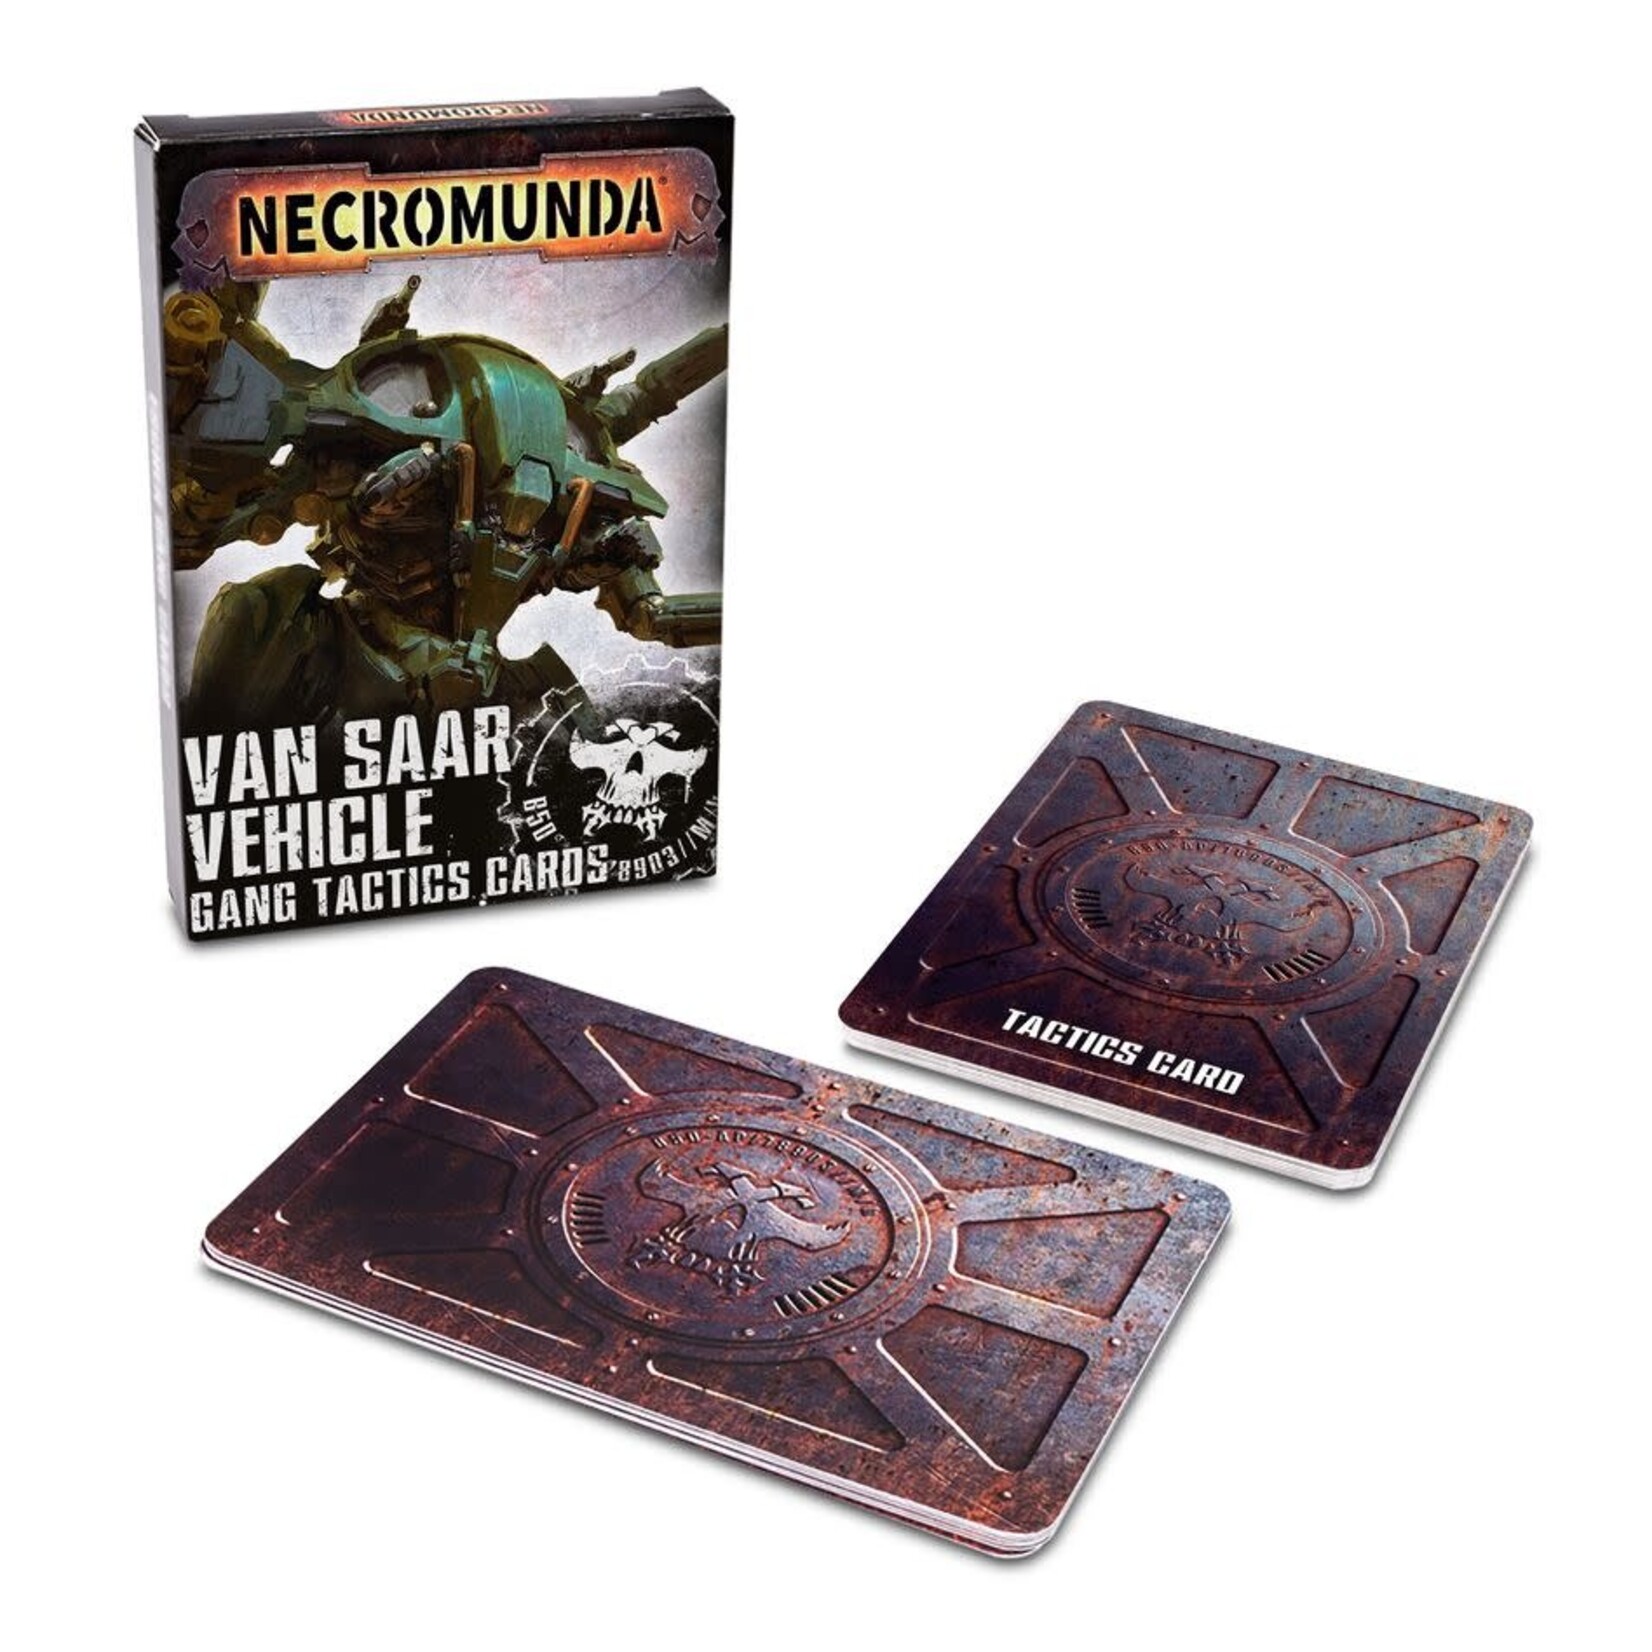 Necromunda Van Saar Vehicle Gang Tactics Cards